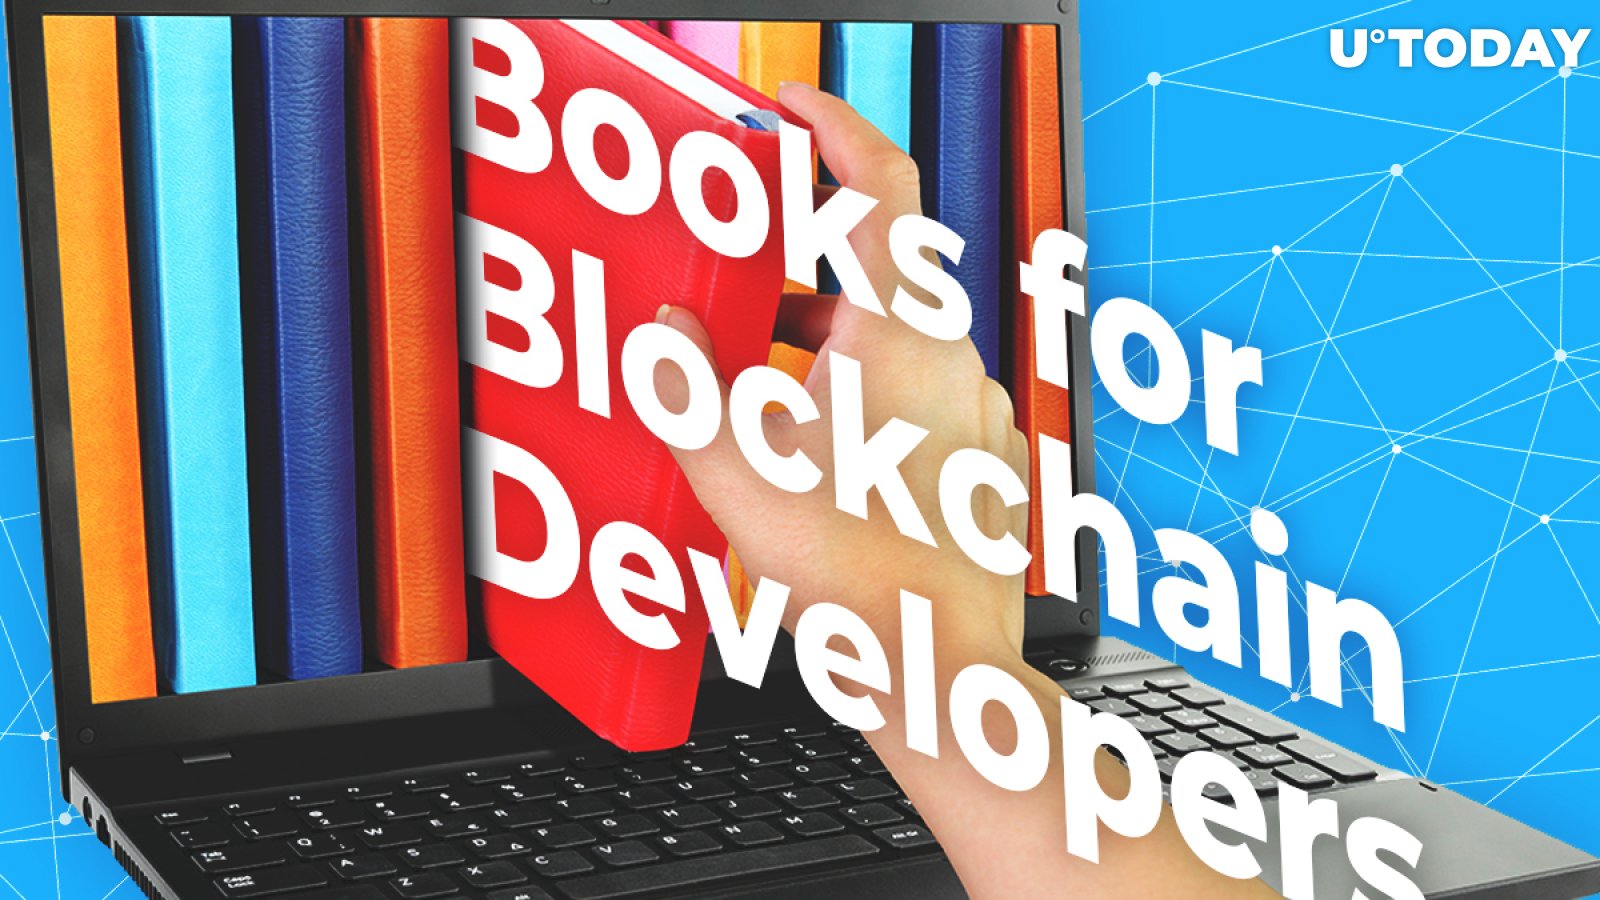 10 Best Books for Blockchain Developers in 2019